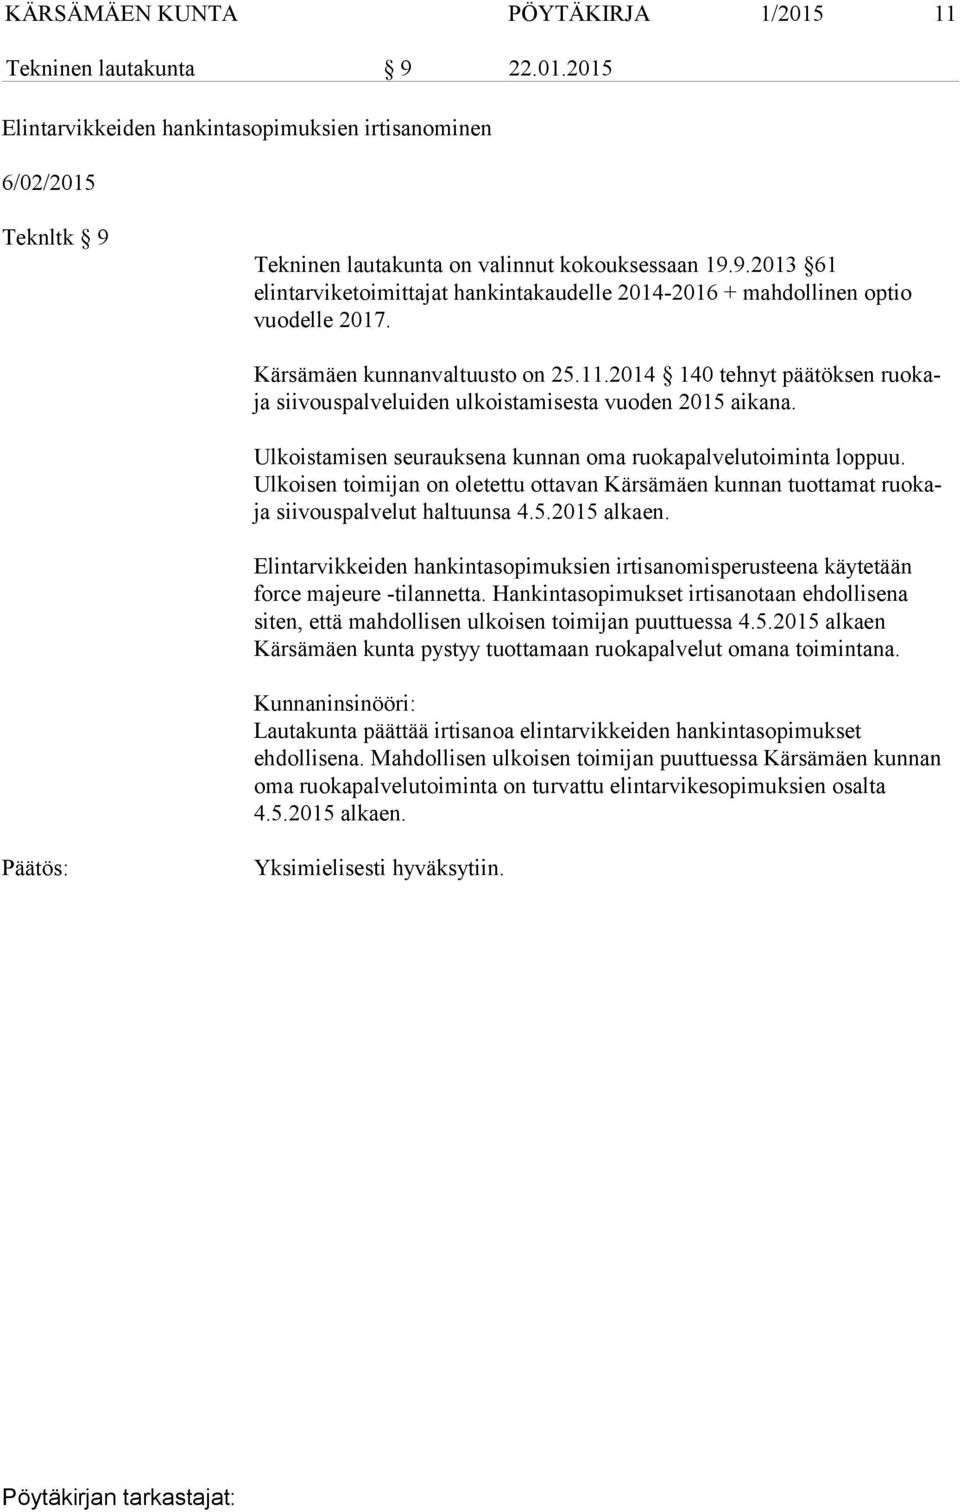 Ulkoisen toimijan on oletettu ottavan Kärsämäen kunnan tuottamat ruokaja siivouspalvelut haltuunsa 4.5.2015 alkaen.